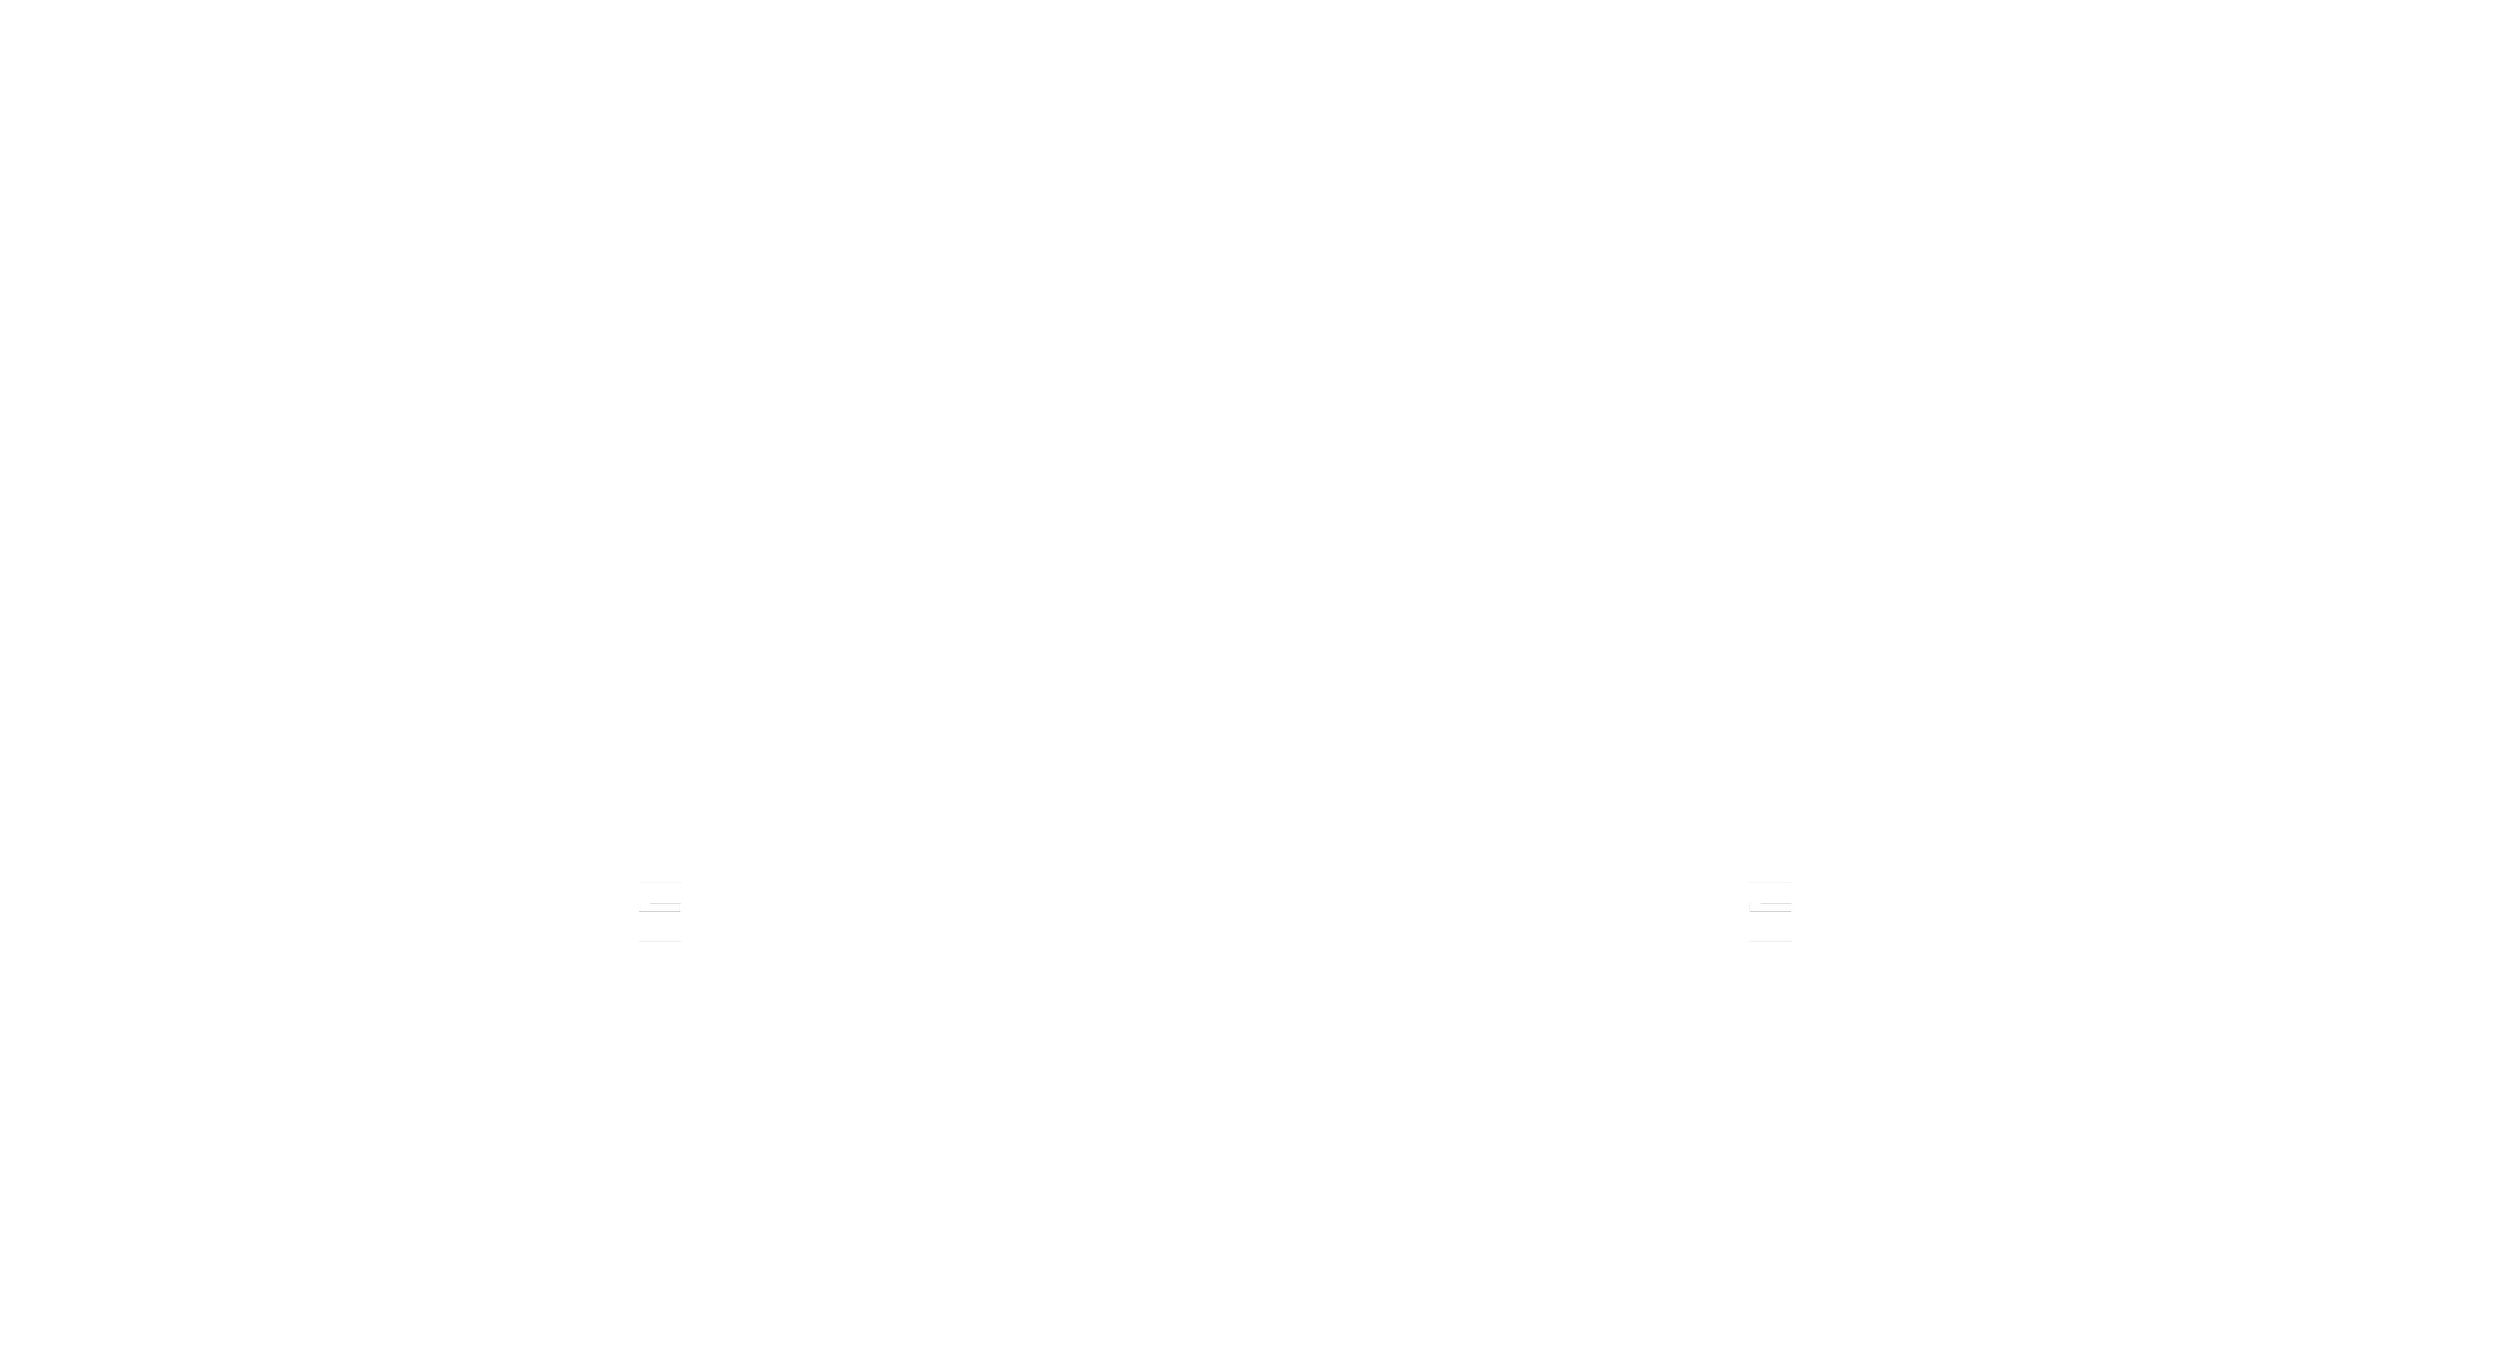 Beyond Driven